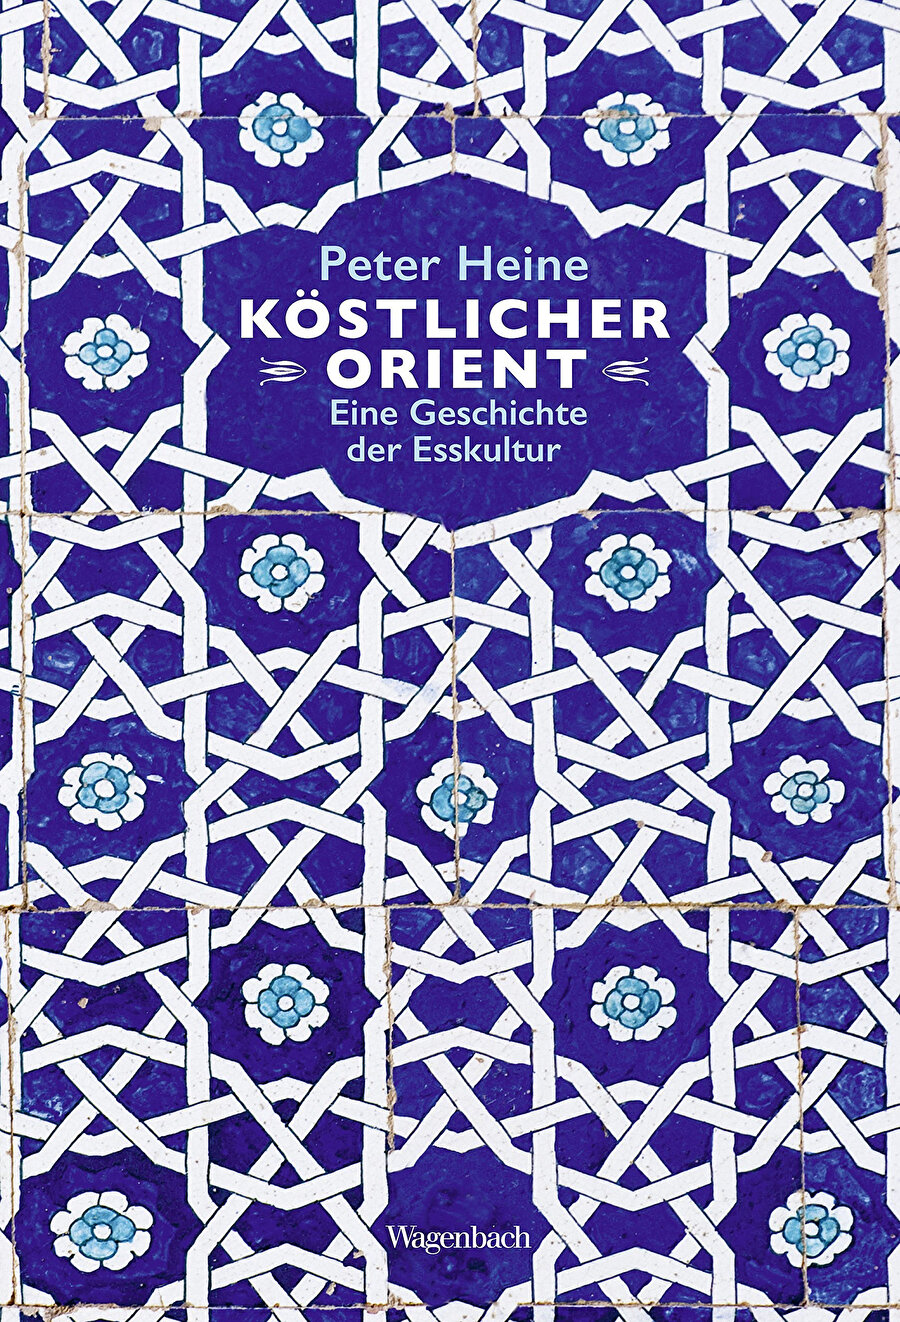  Köstlicher Orient: Eine Geschichte der Esskultur, Peter Heine, Klaus Wagenbach Verlag,